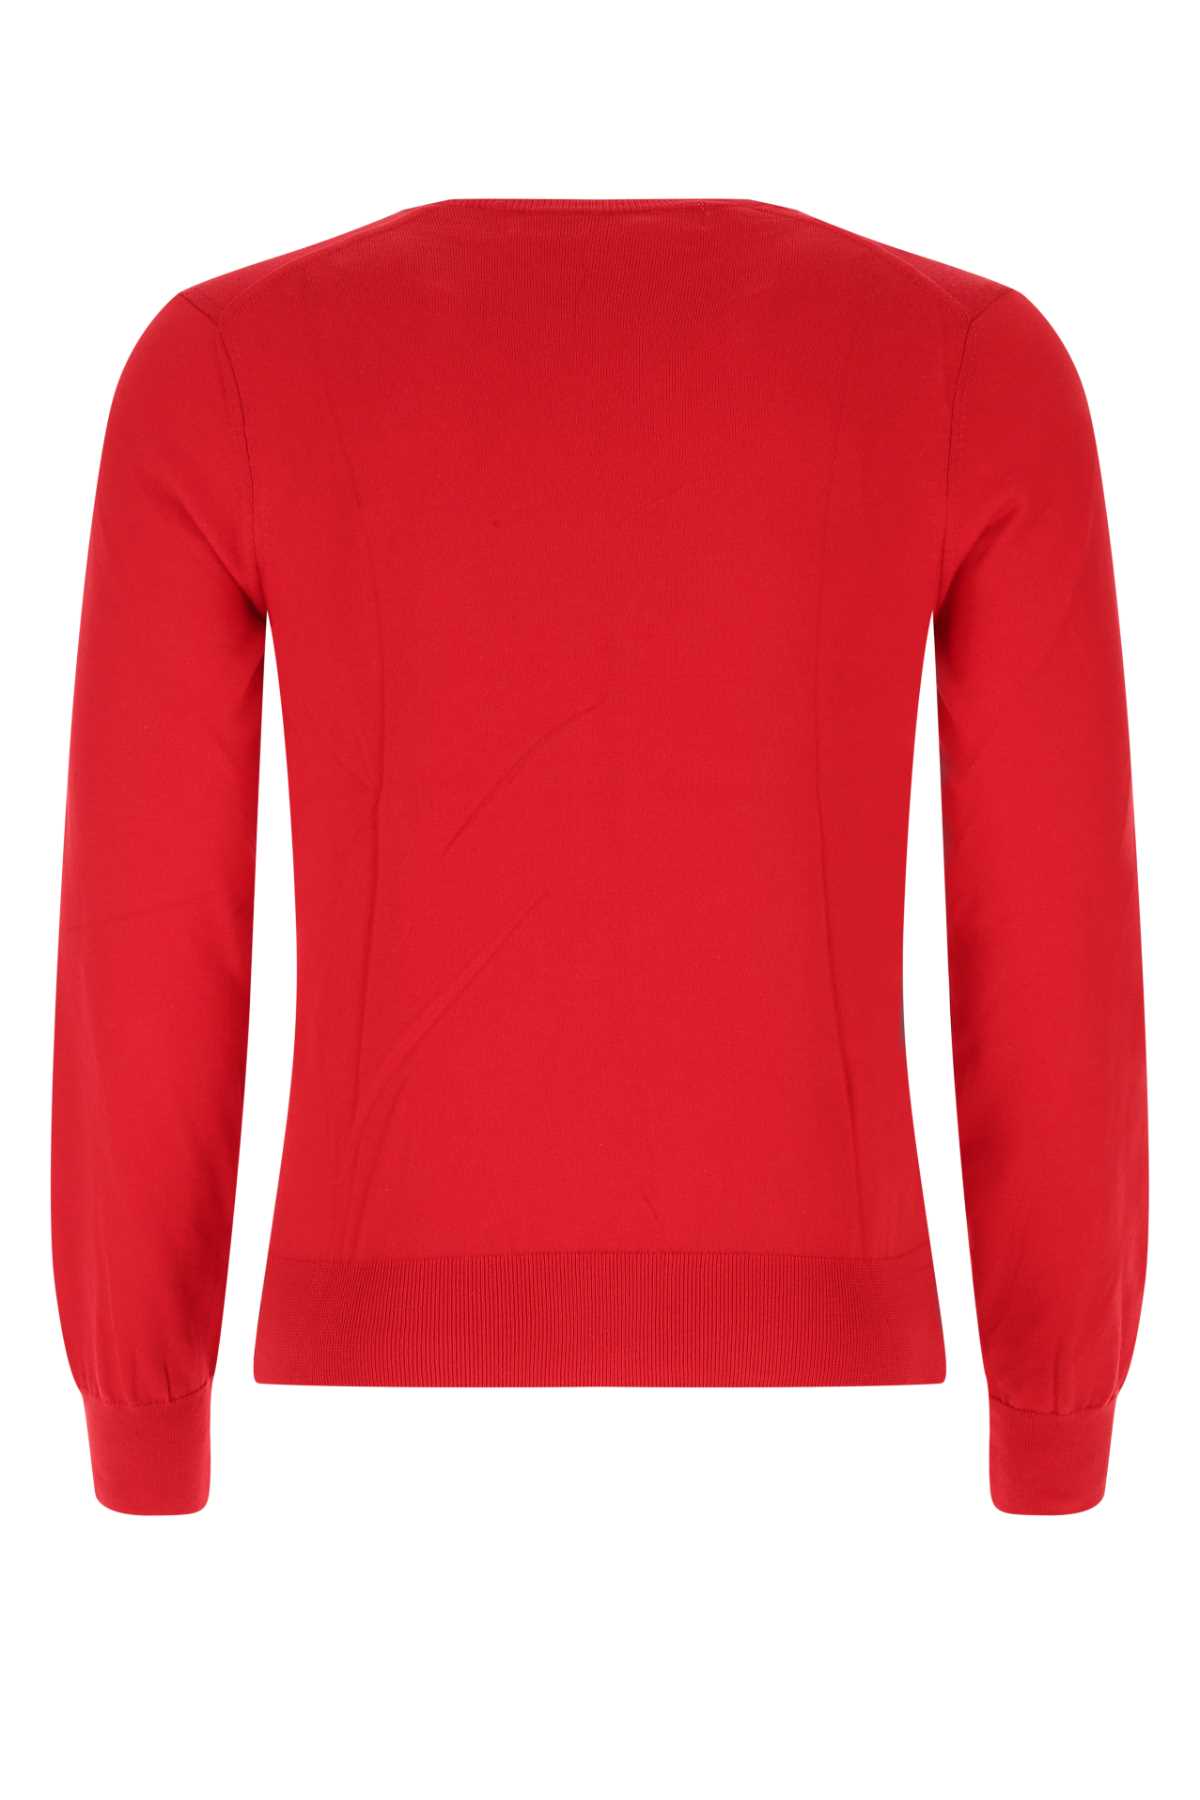 Shop Comme Des Garçons Play Red Cotton Sweater